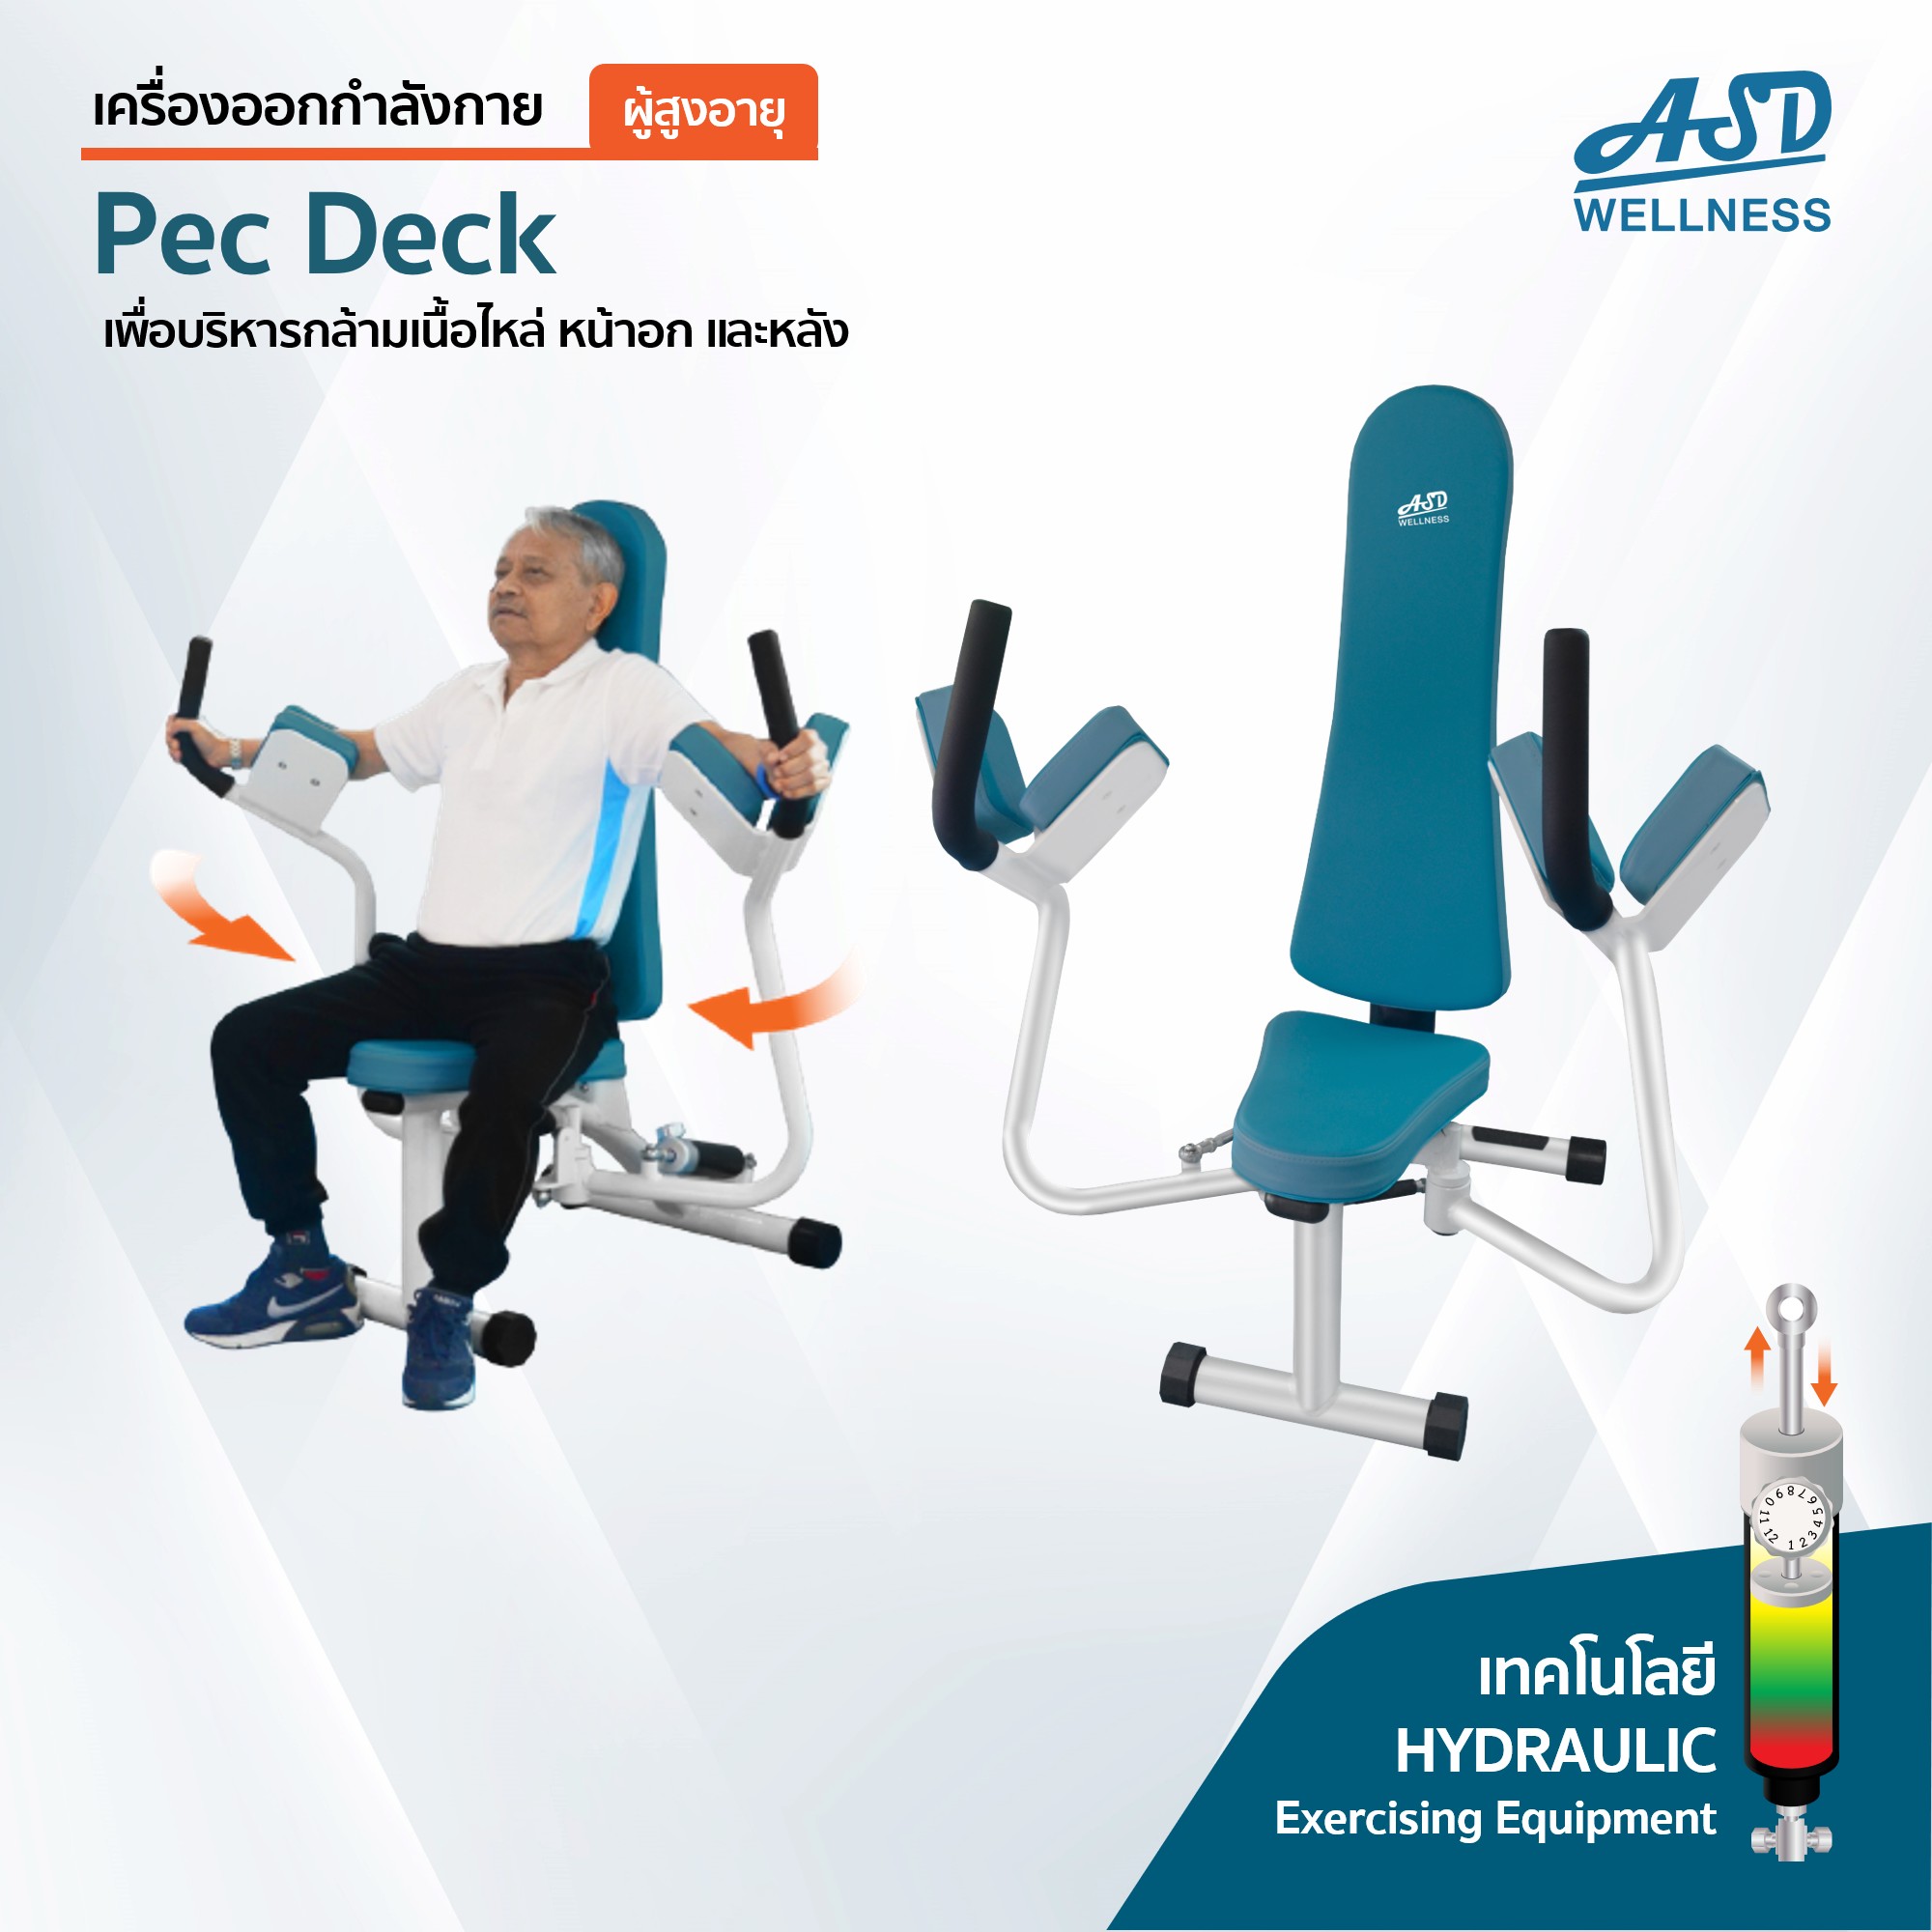 เครื่องออกกำลังกาย สำหรับผู้สูงอายุ เพื่อบริหารกล้ามเนื้อไหล่ หน้าอก และหลัง Pec Deck